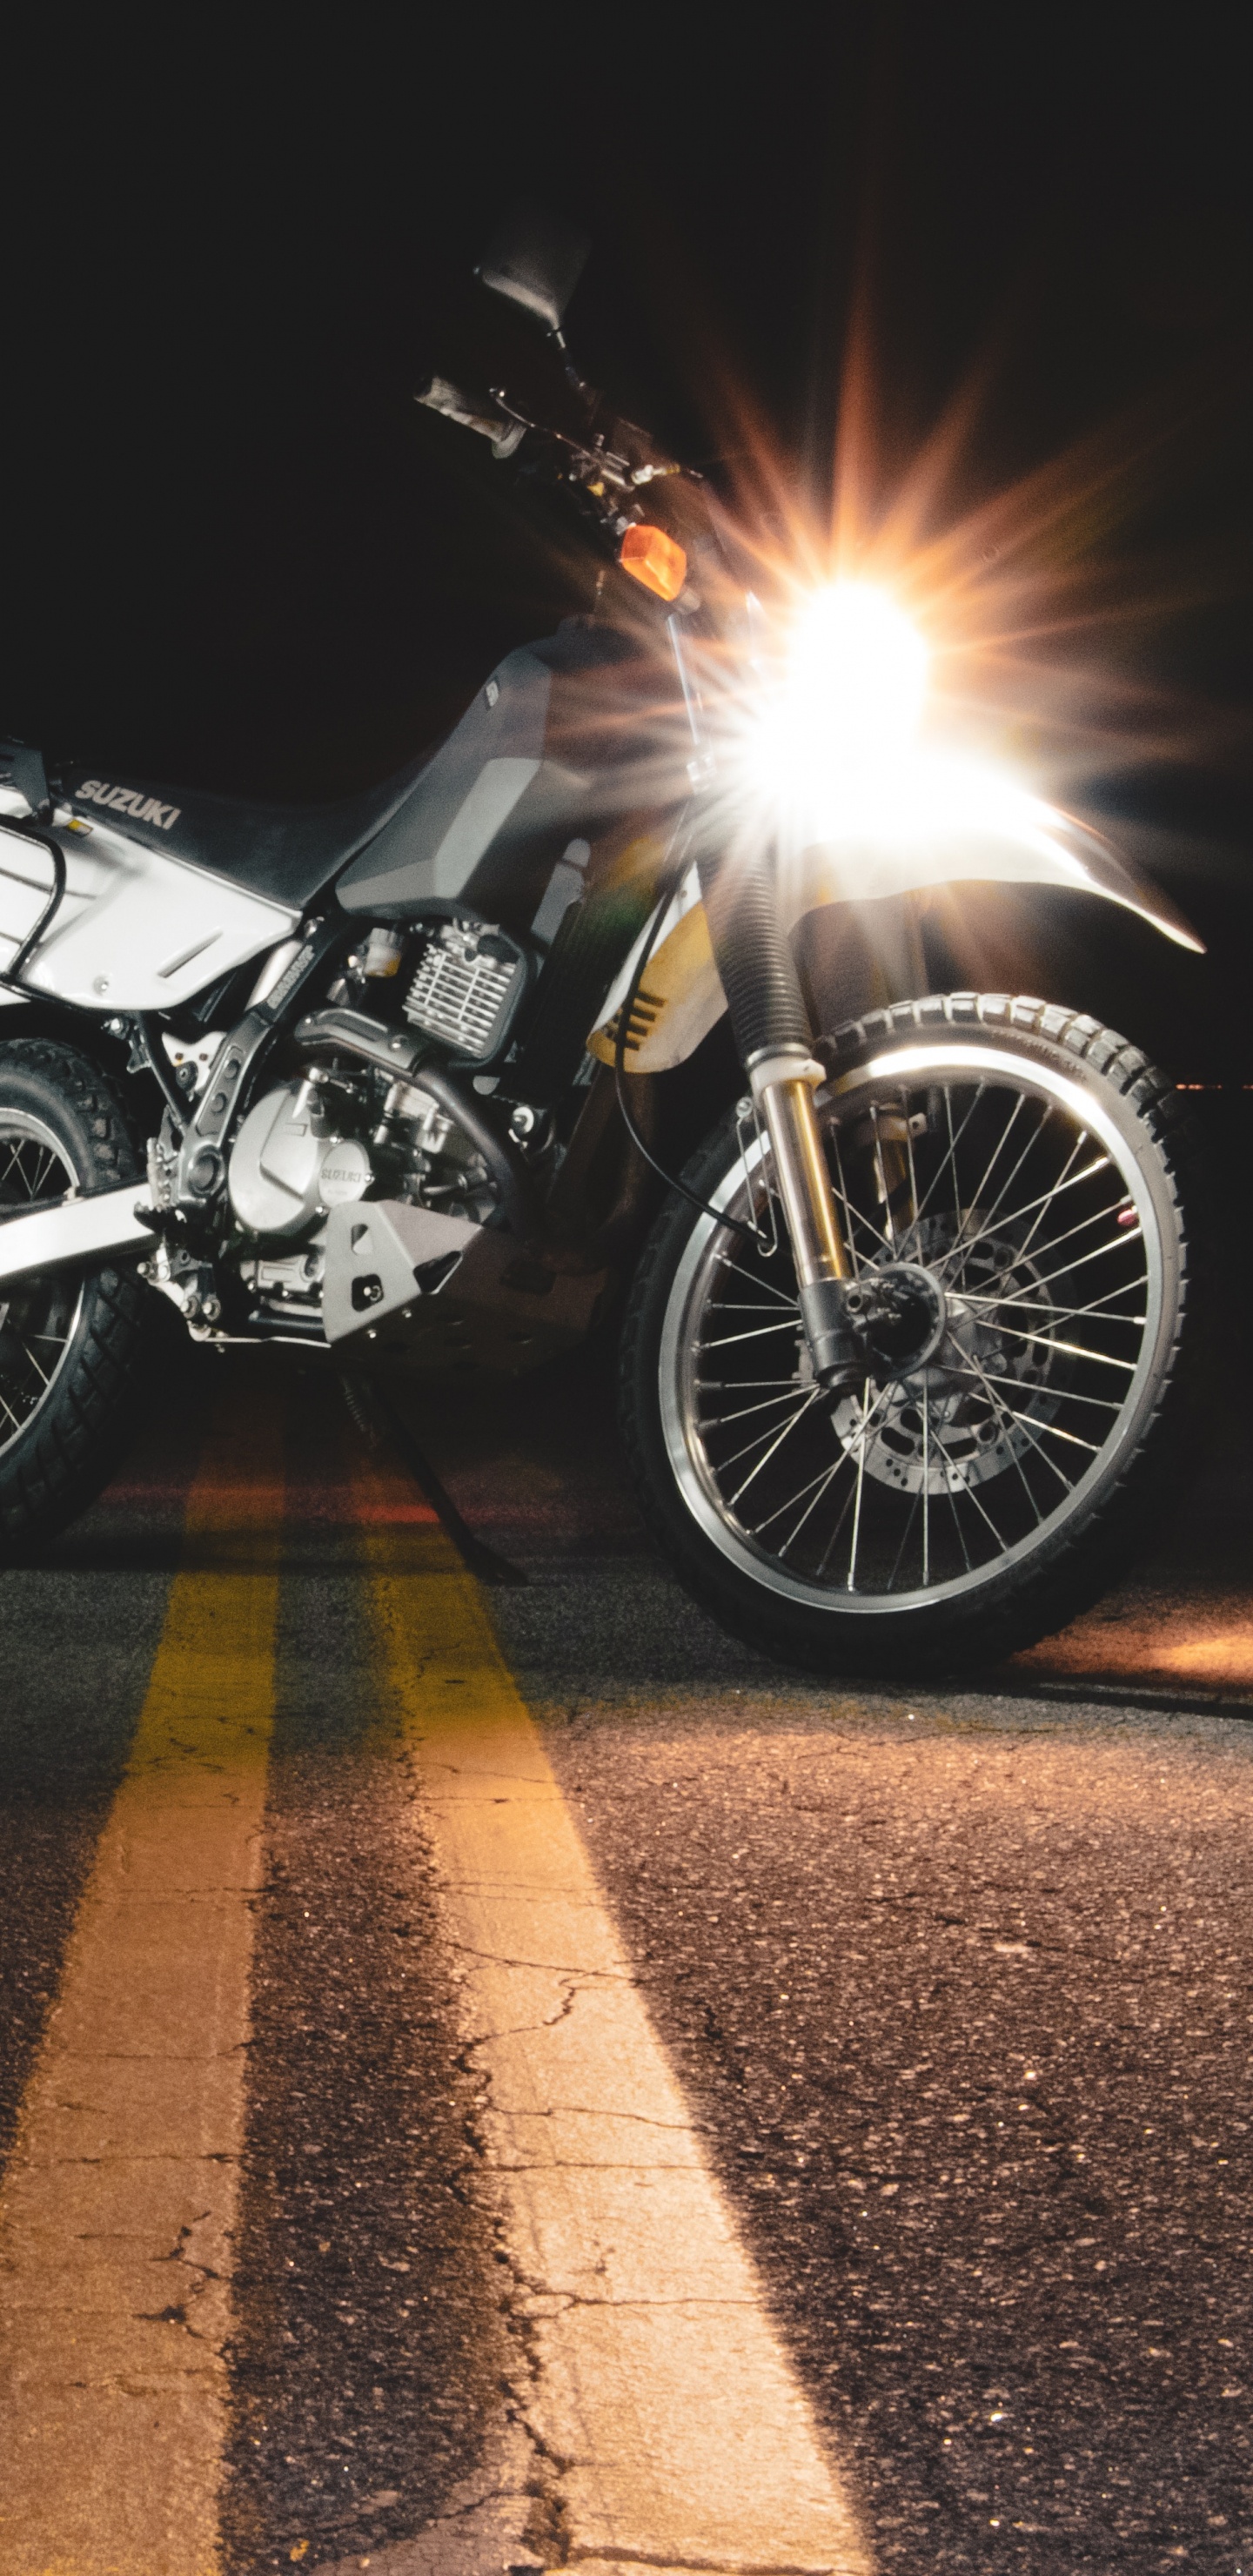 Moto Noir et Argent Sur Route Pendant la Nuit. Wallpaper in 1440x2960 Resolution